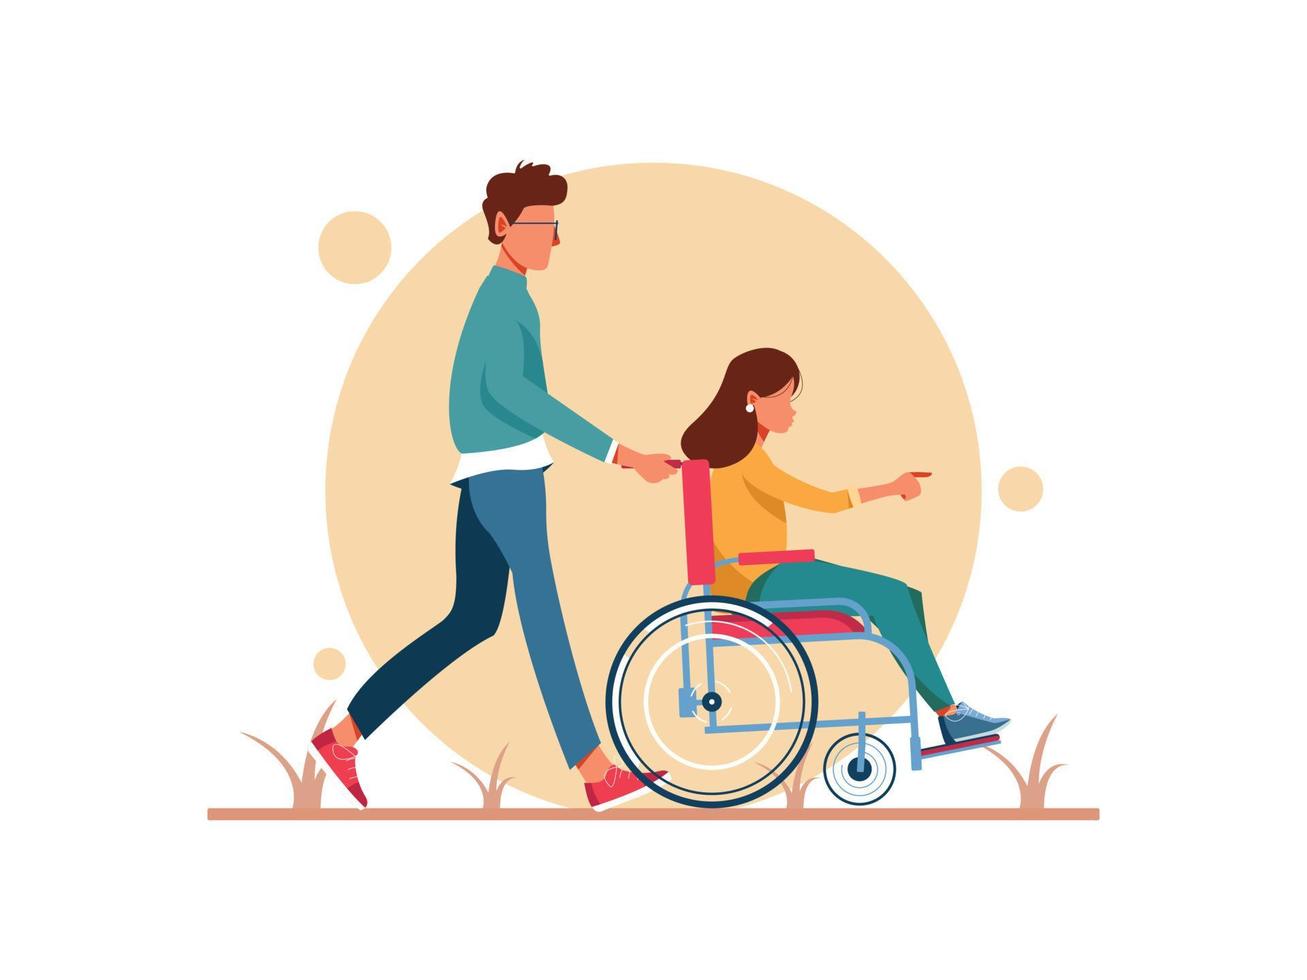 día mundial de la discapacidad. hombre y mujer en silla de ruedas caminando. personaje femenino en rehabilitación después de un trauma o enfermedad. ilustración de personaje vector